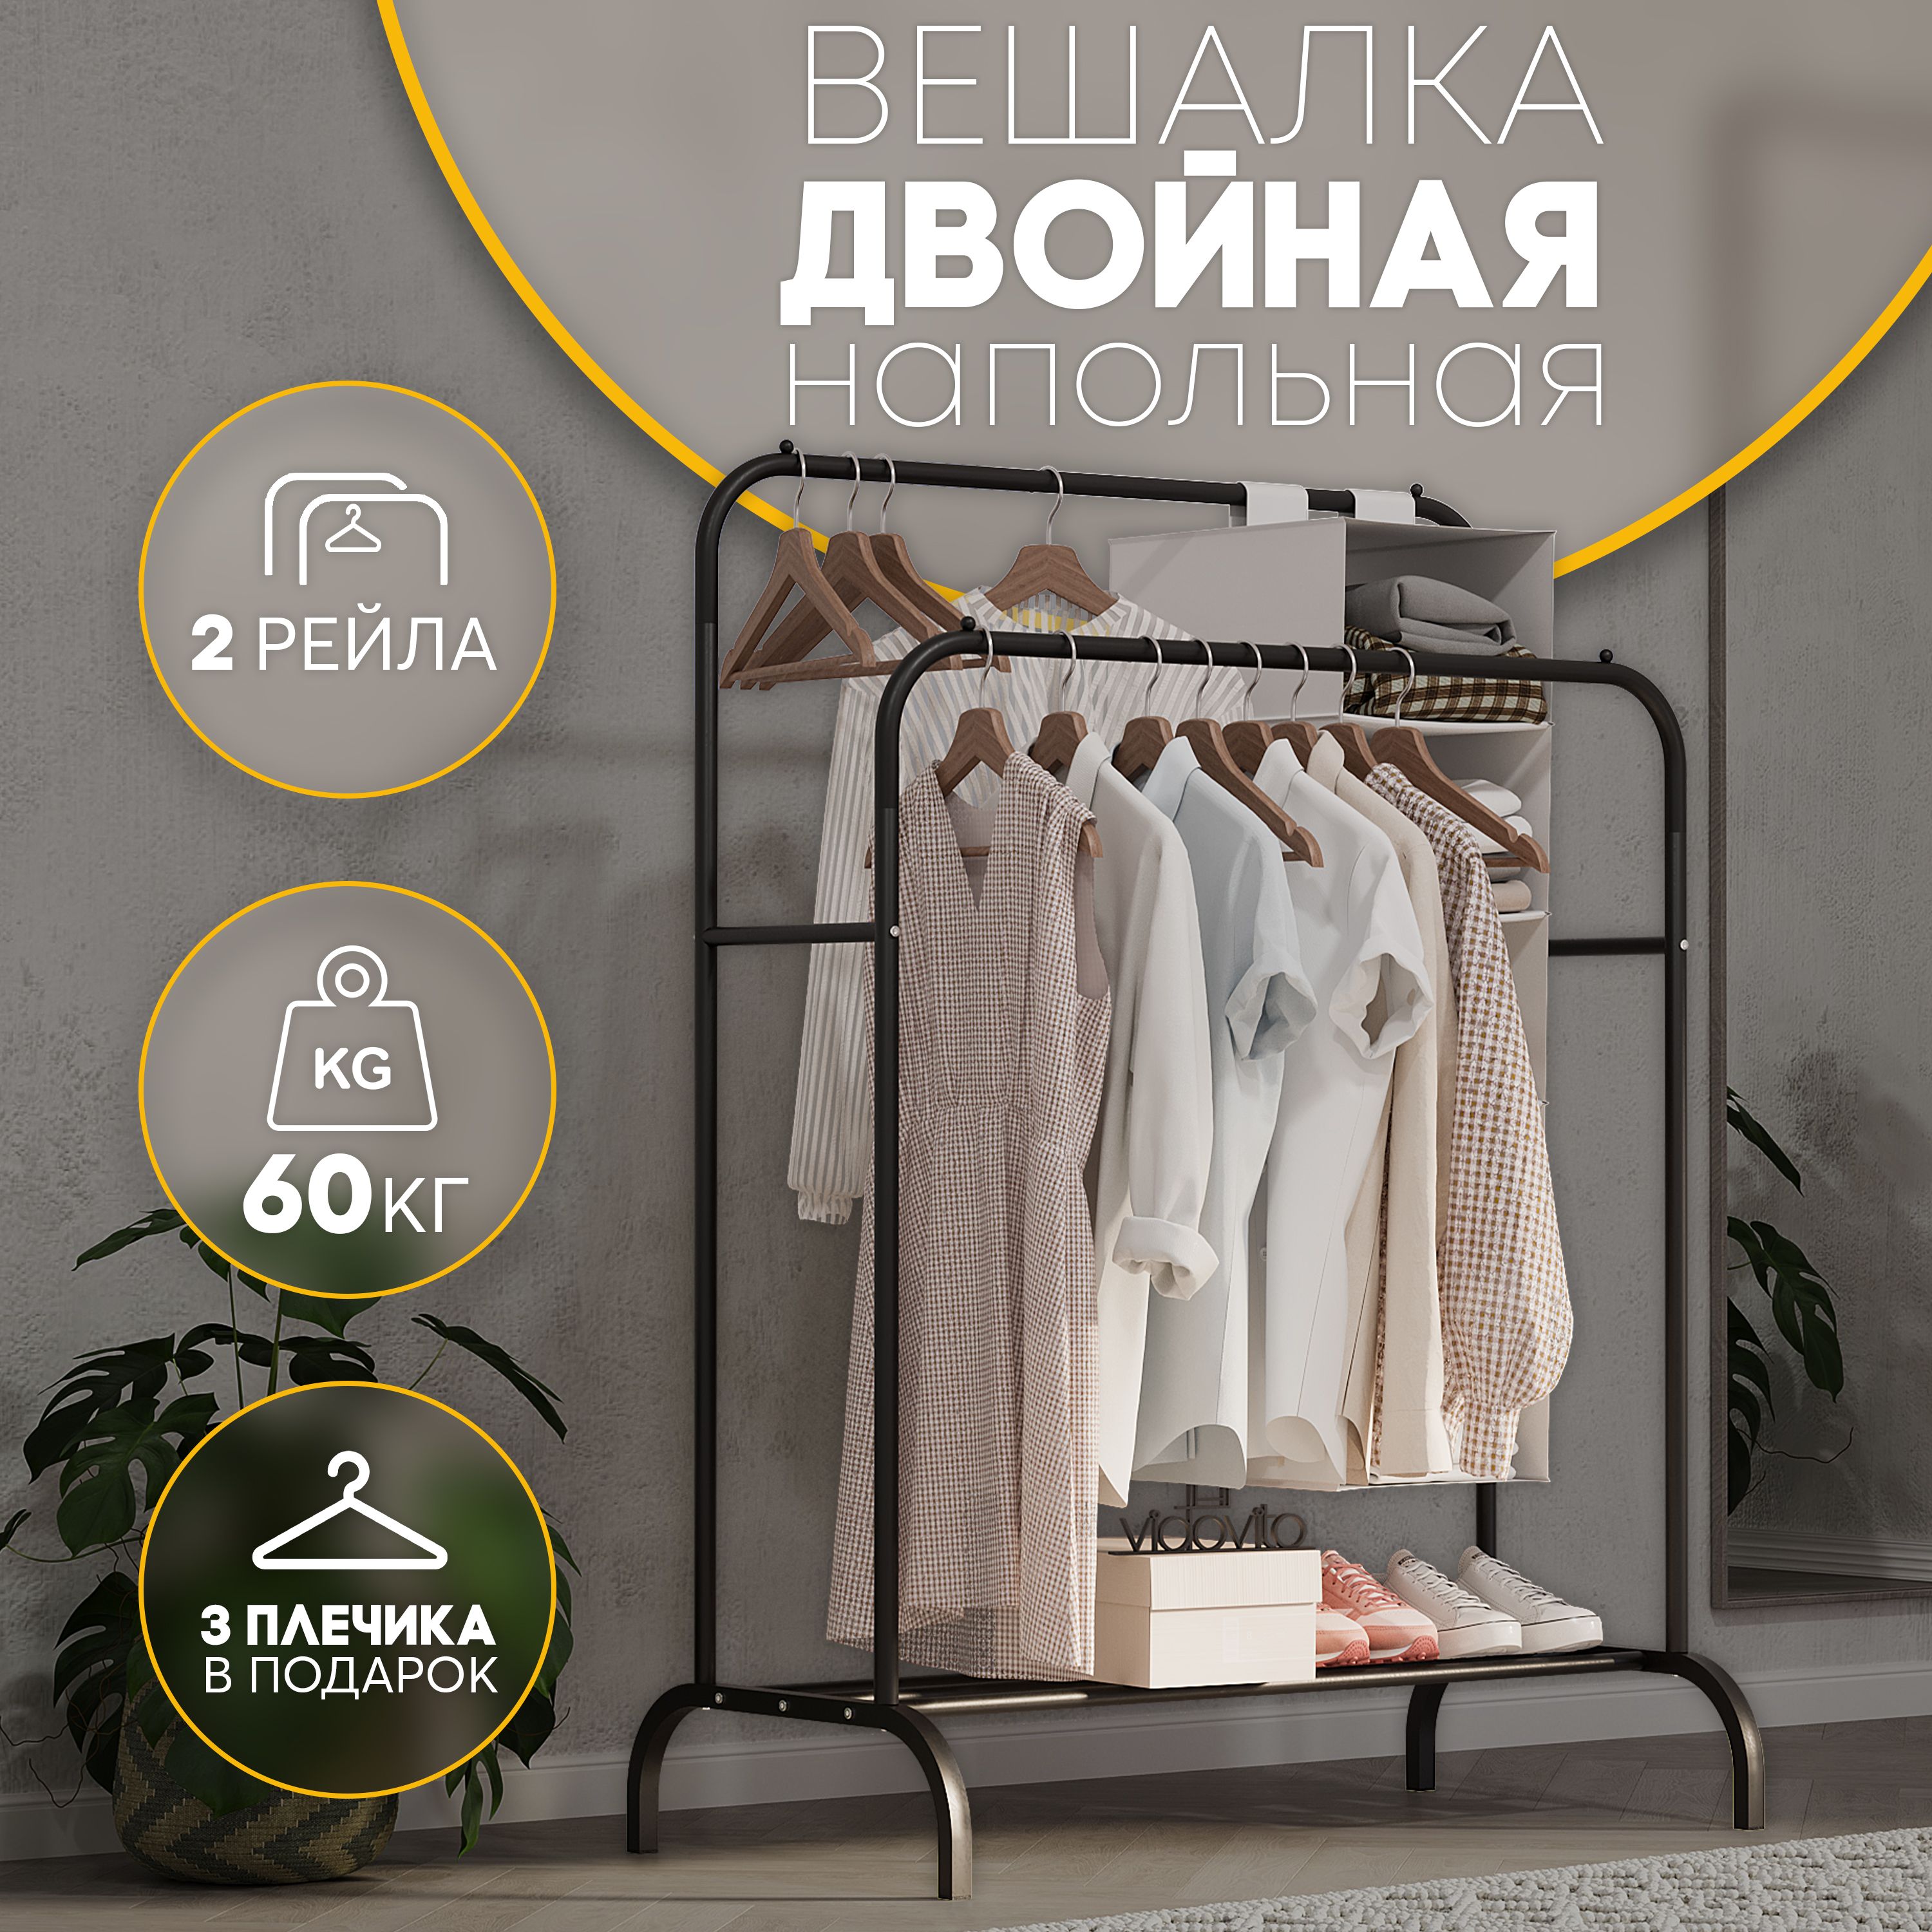 Напольные вешалки для одежды в Калуге приобрести по низким ценам — Дом Диванов